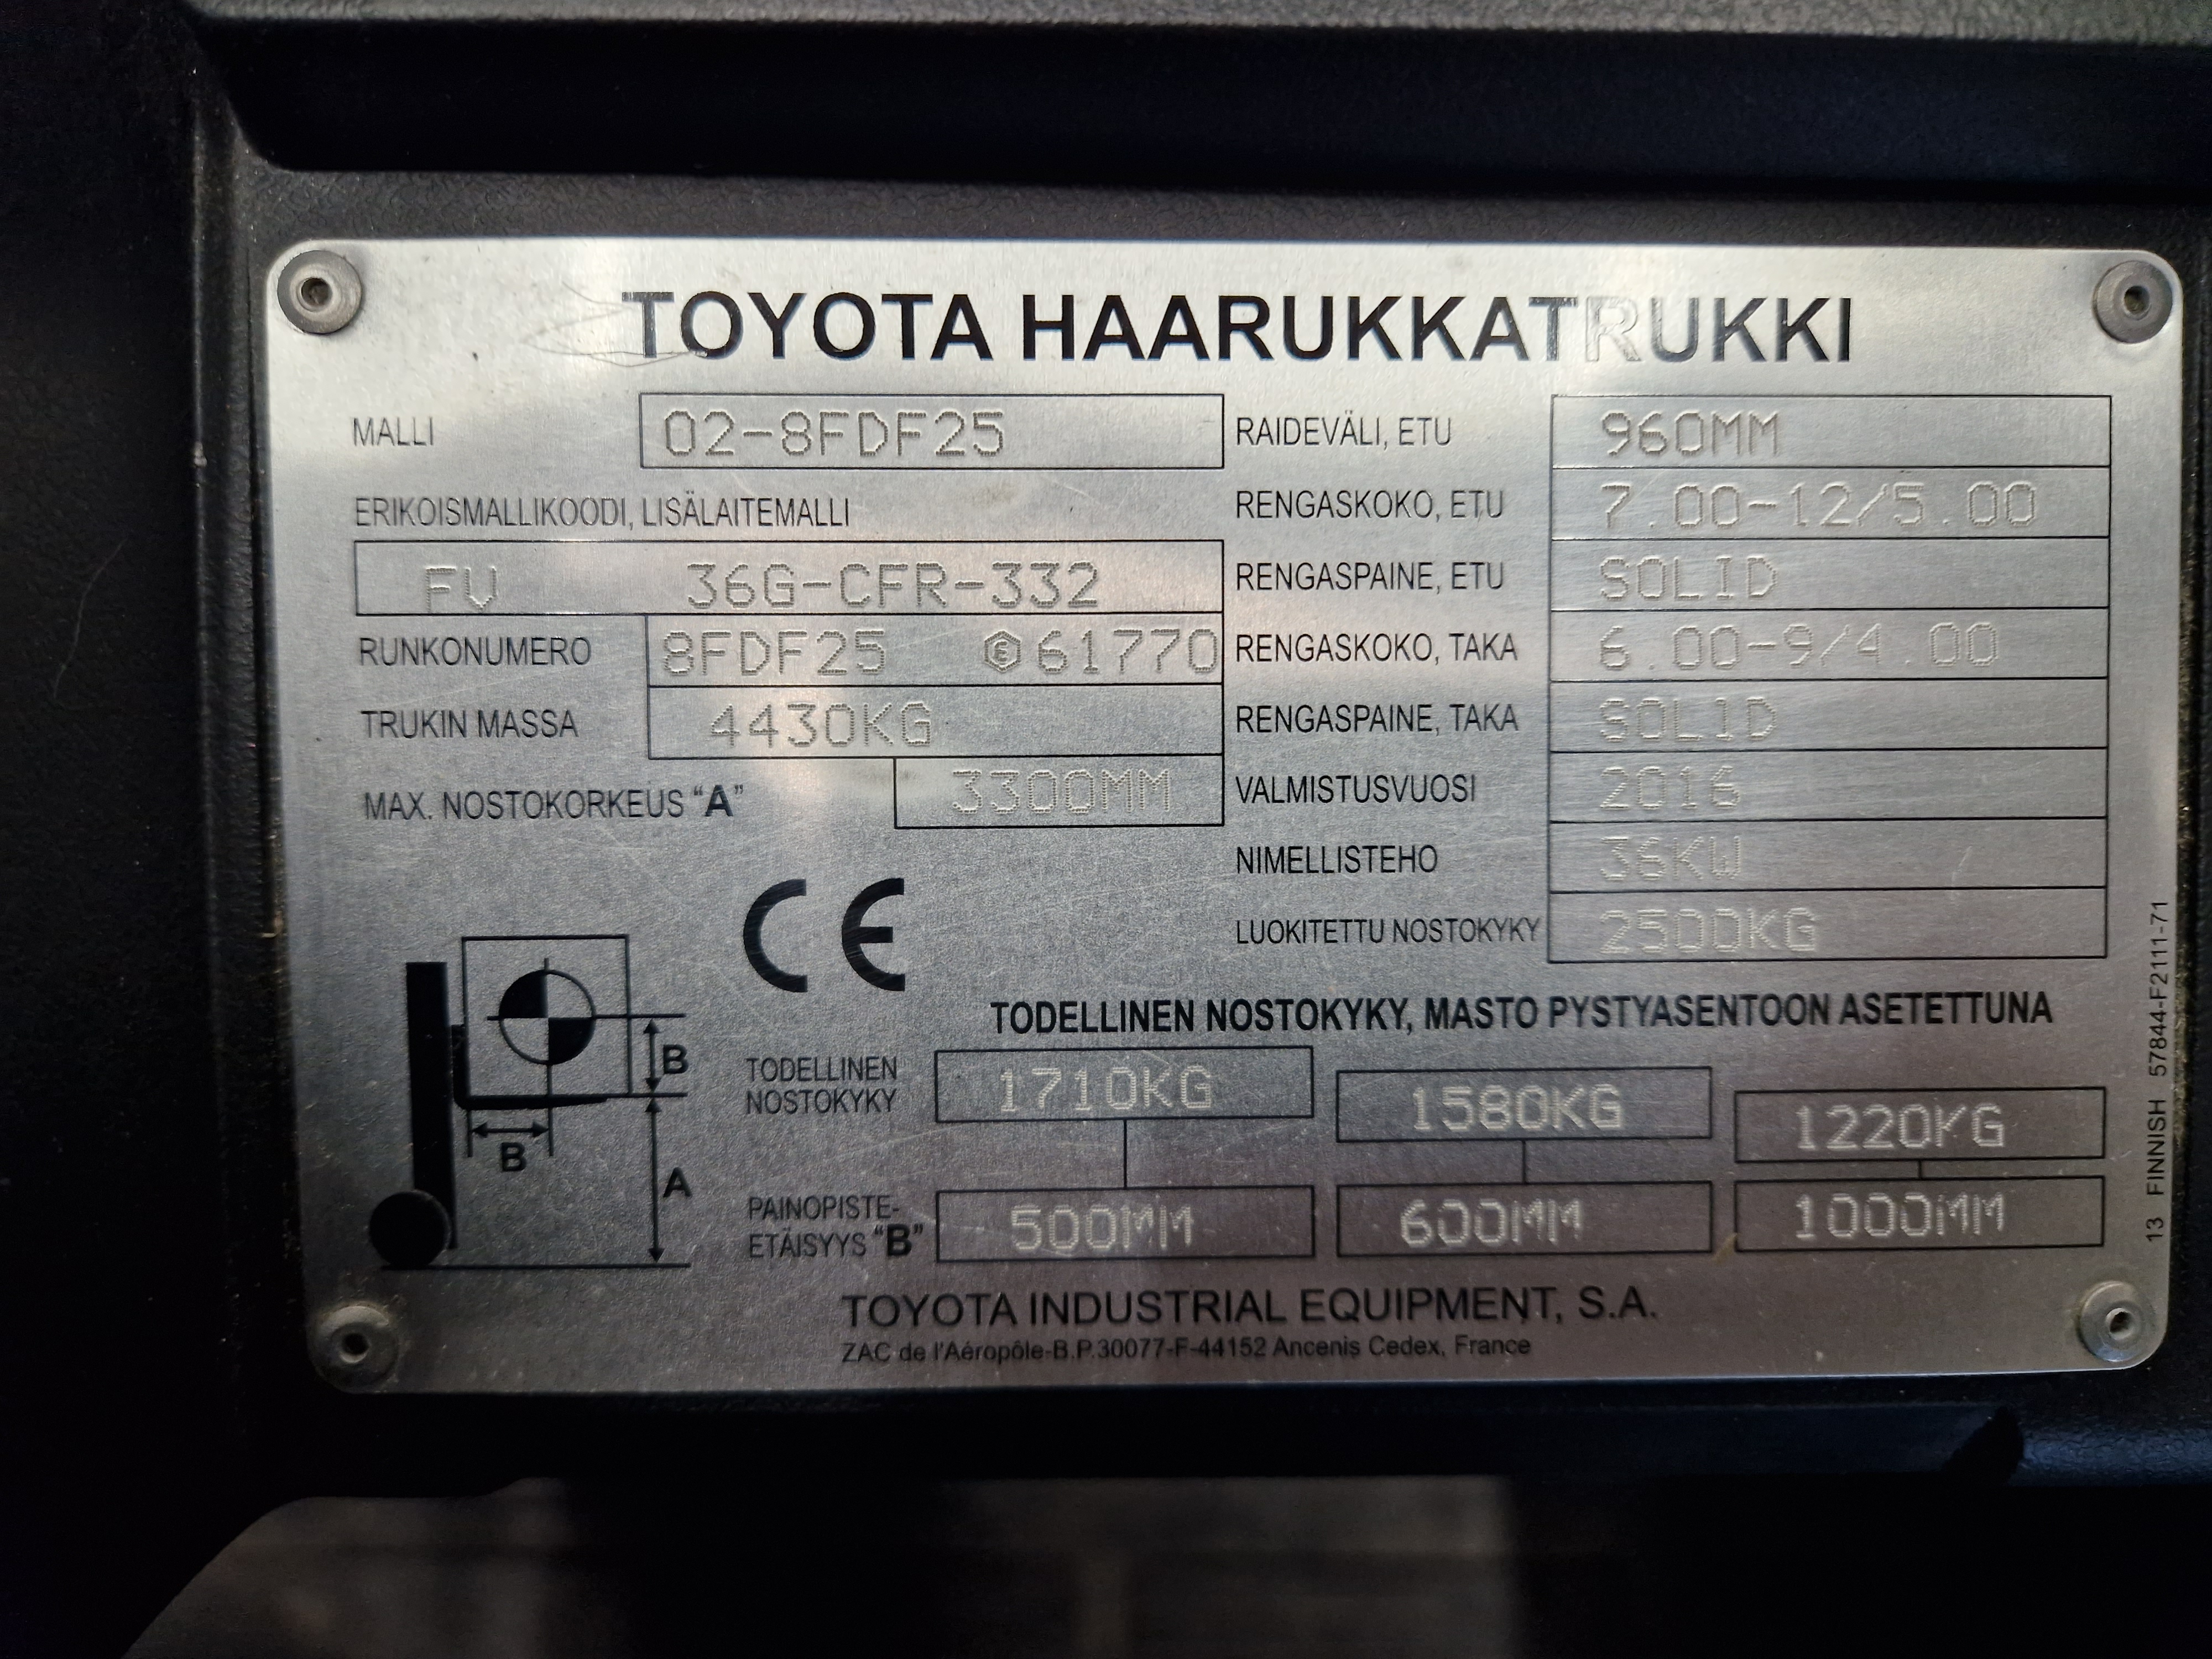 Toyota 02-8FDF25 dieseltrukki vm. 2016 (vuokralla)